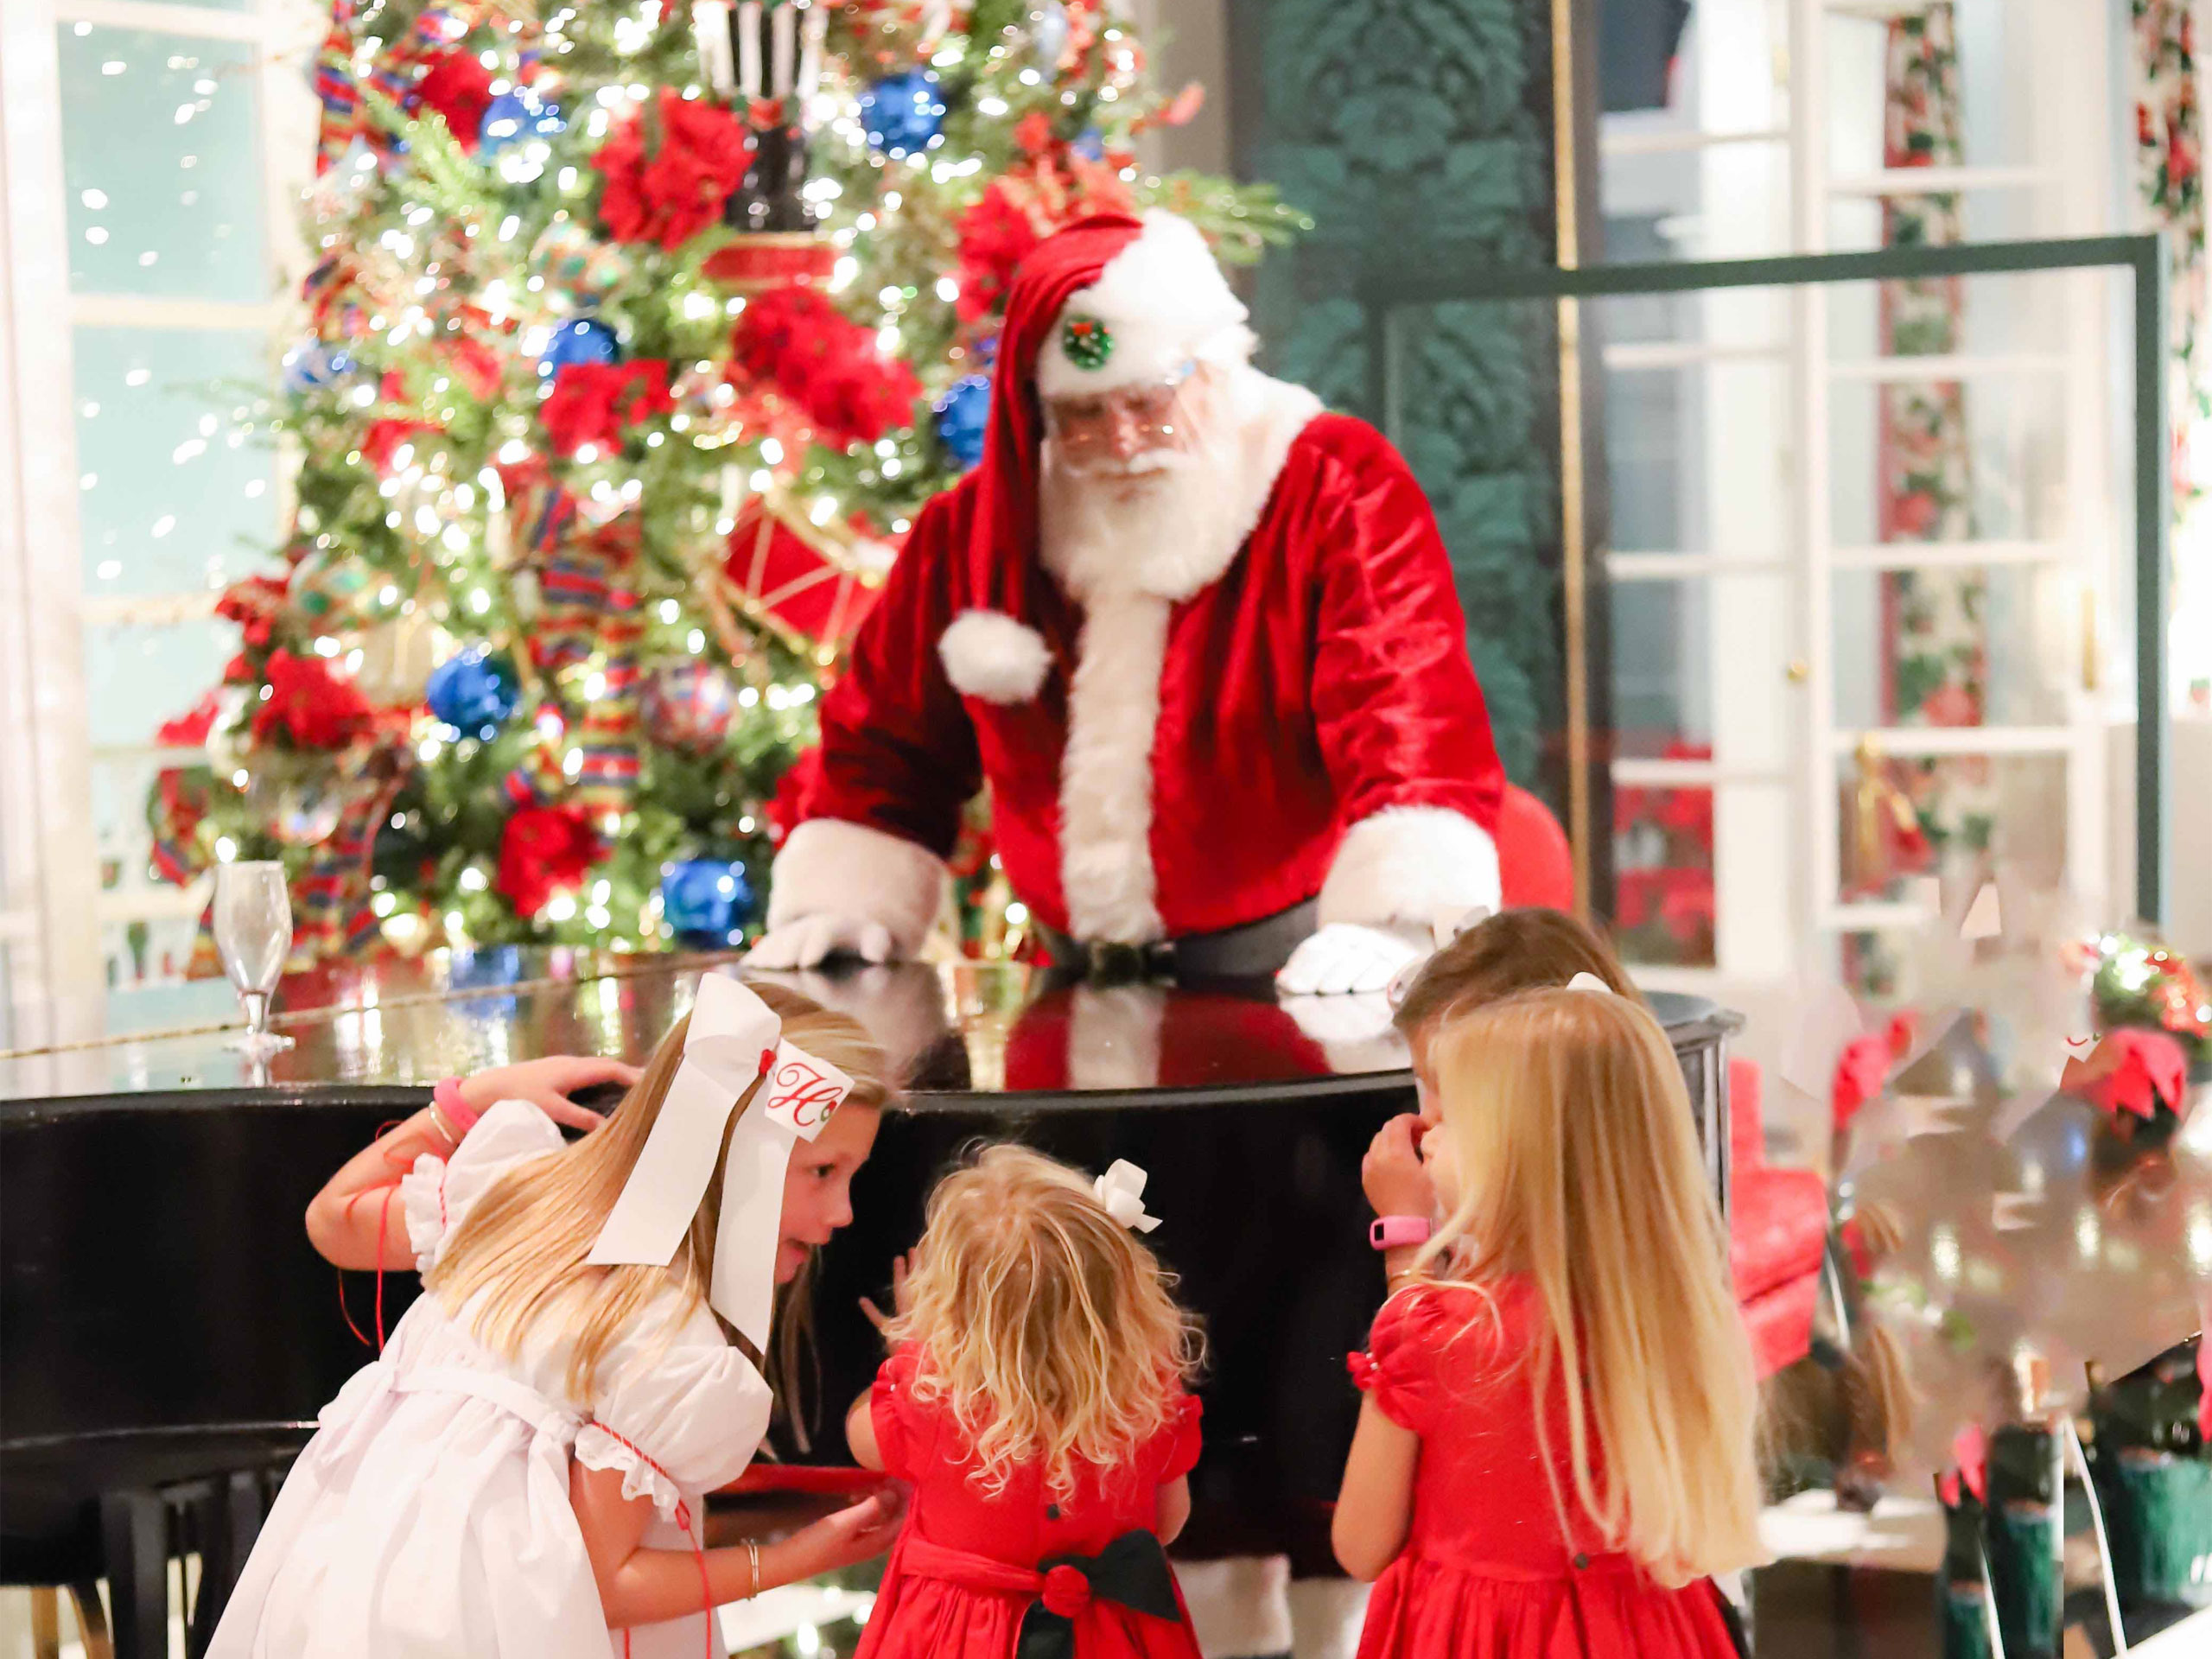 Santa with children